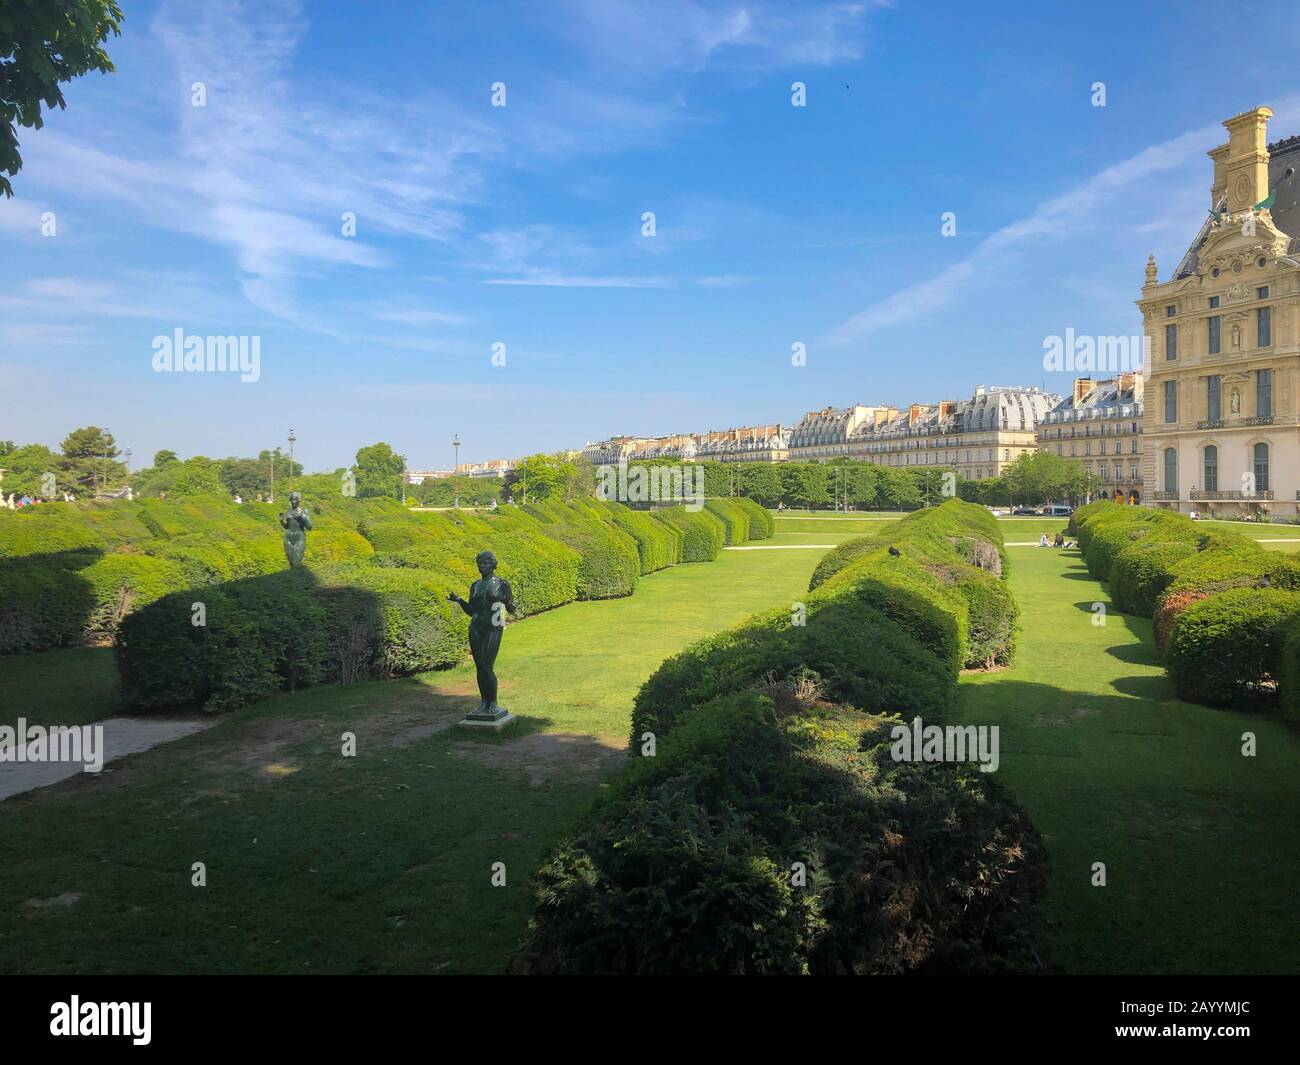 Paris, France - 05.24.2019: Jardins avec statues à côté du célèbre Musée du Louvre avec Pyramide du Louvre. Banque D'Images